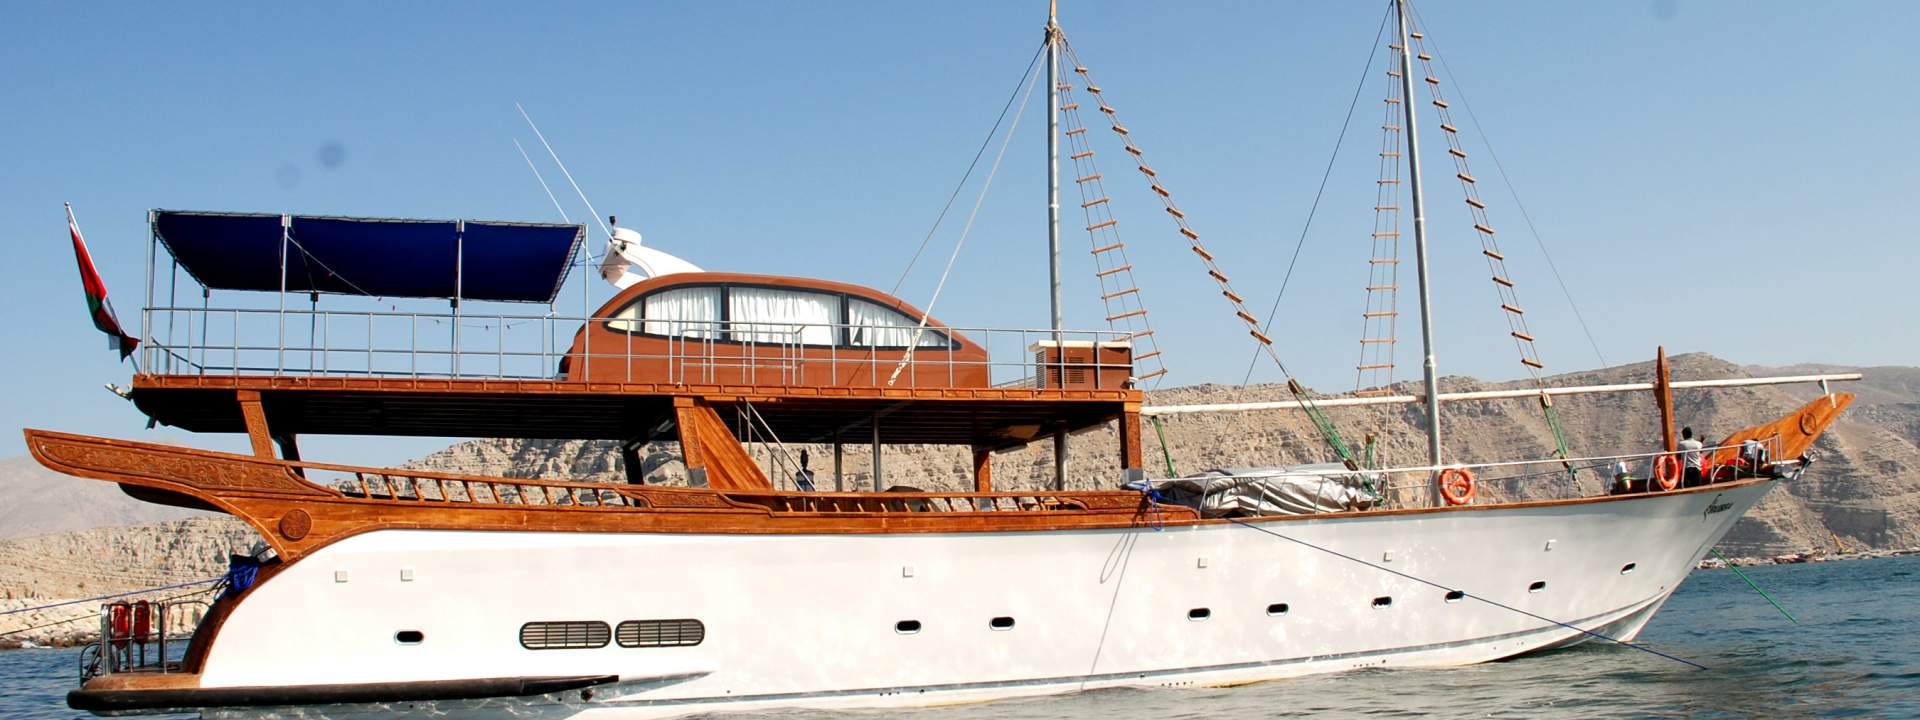 Yacht Rubba